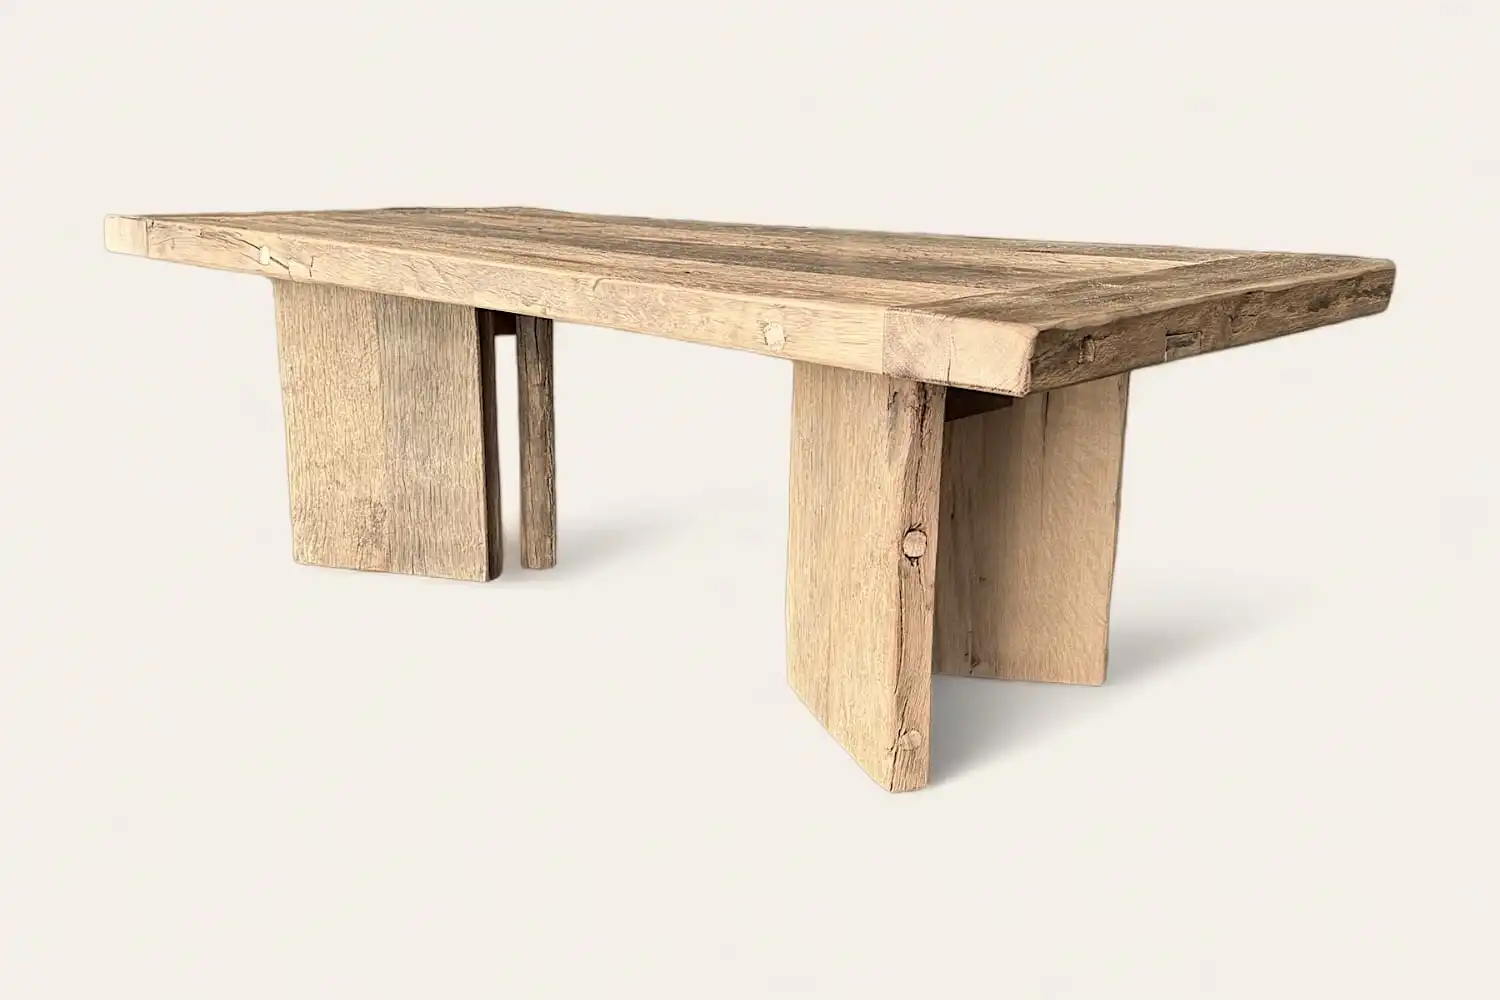 Une table rustique à manger en bois ancien avec un plateau en bois.